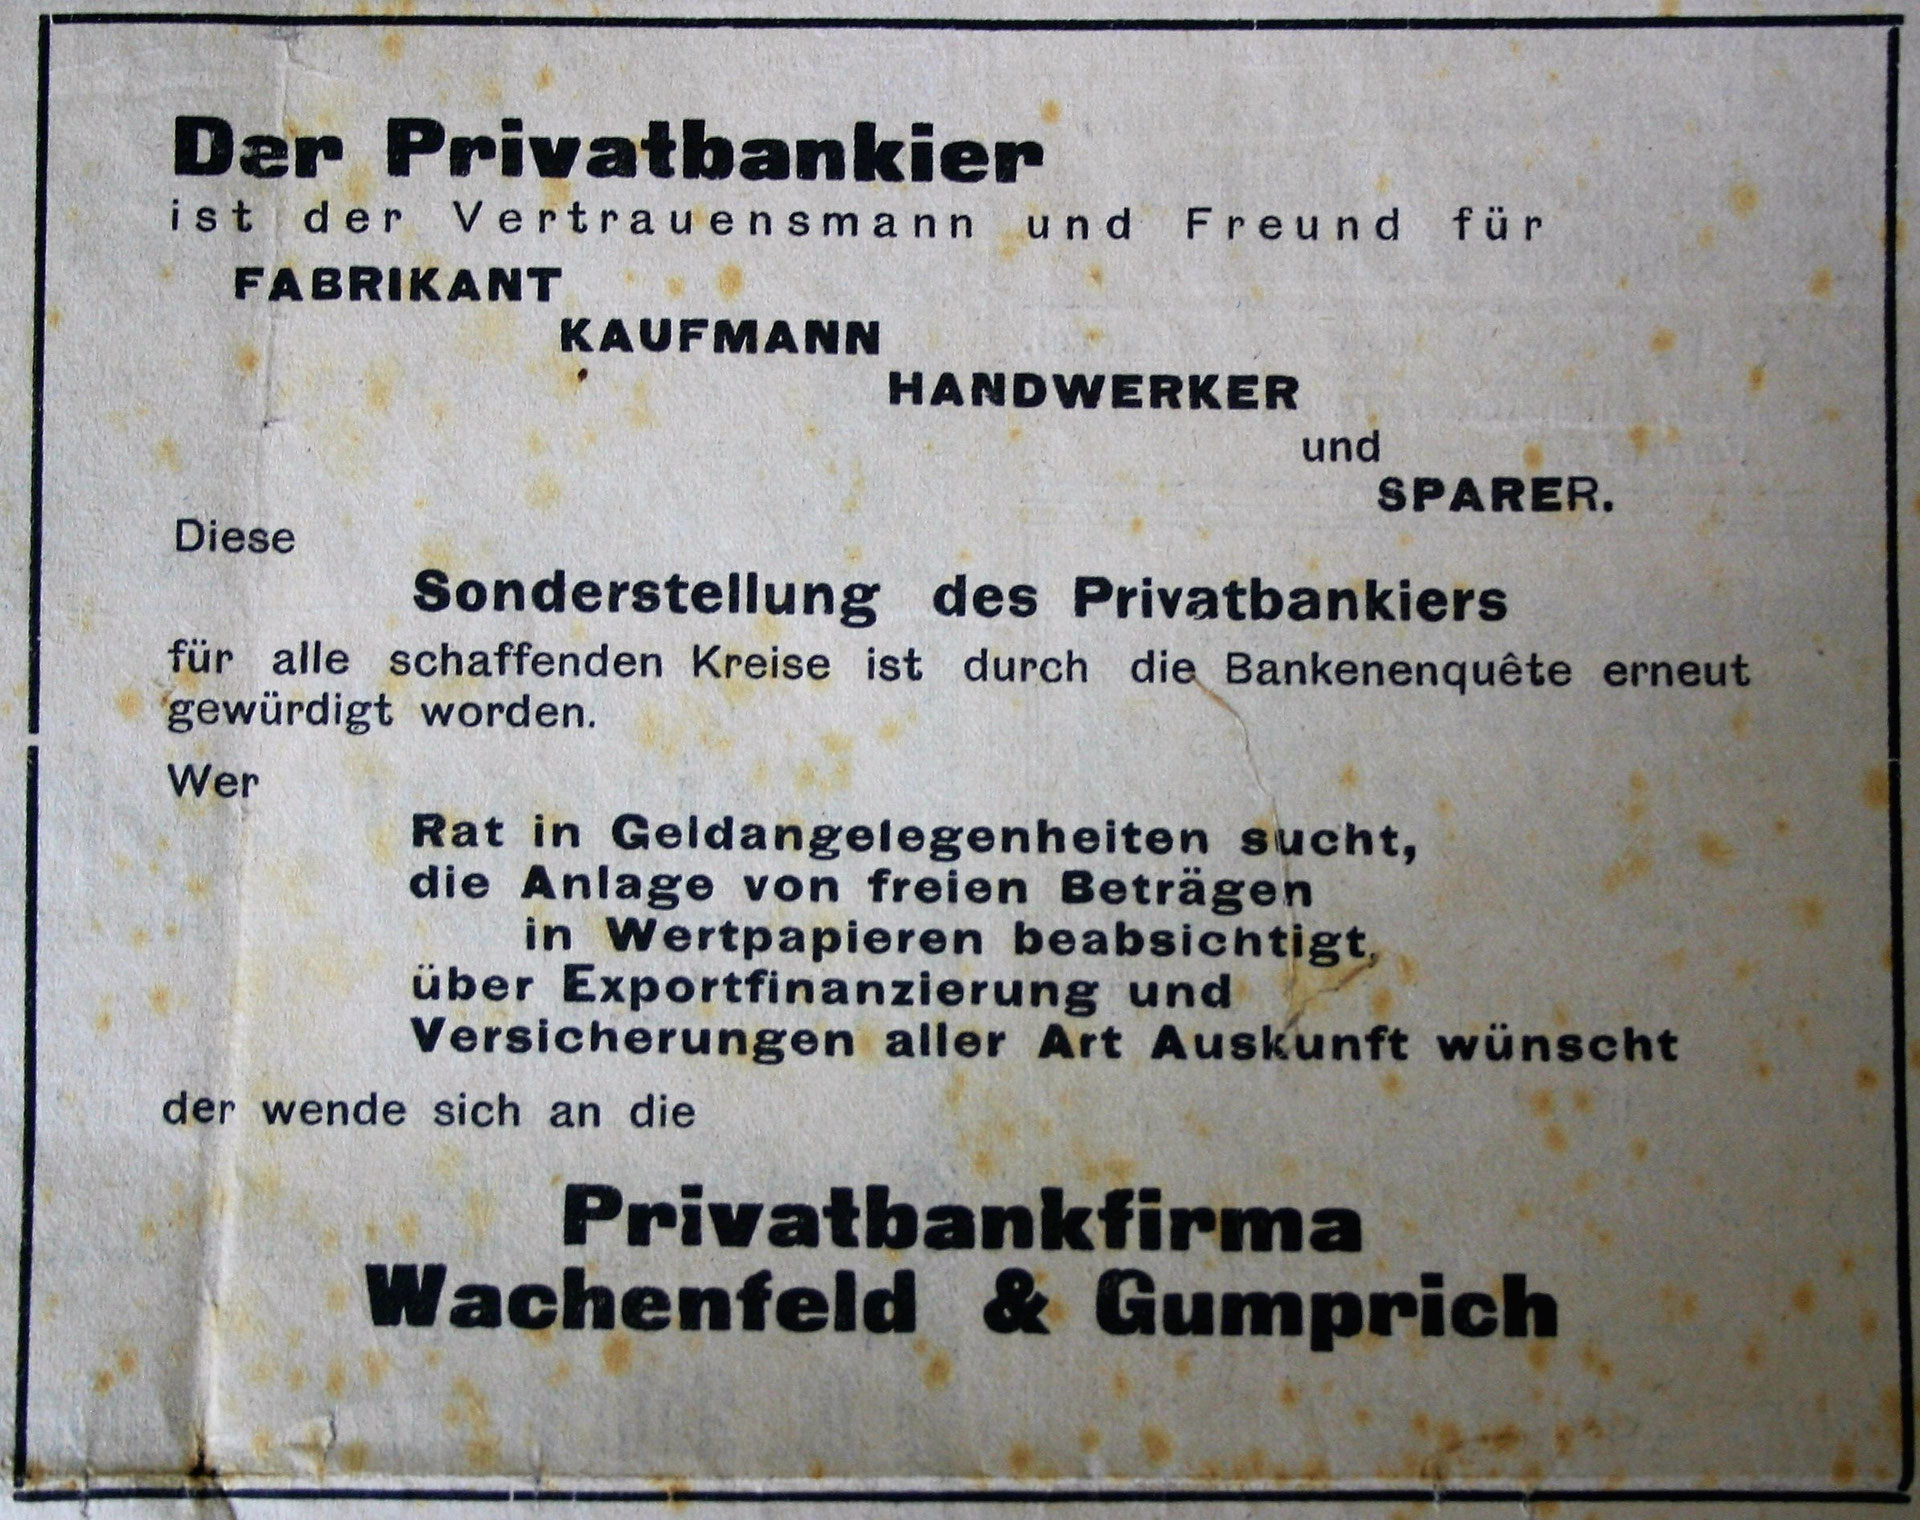 Bankhaus Wachenfeld & Gumprich - heimatfreundebalis Jimdo-Page!